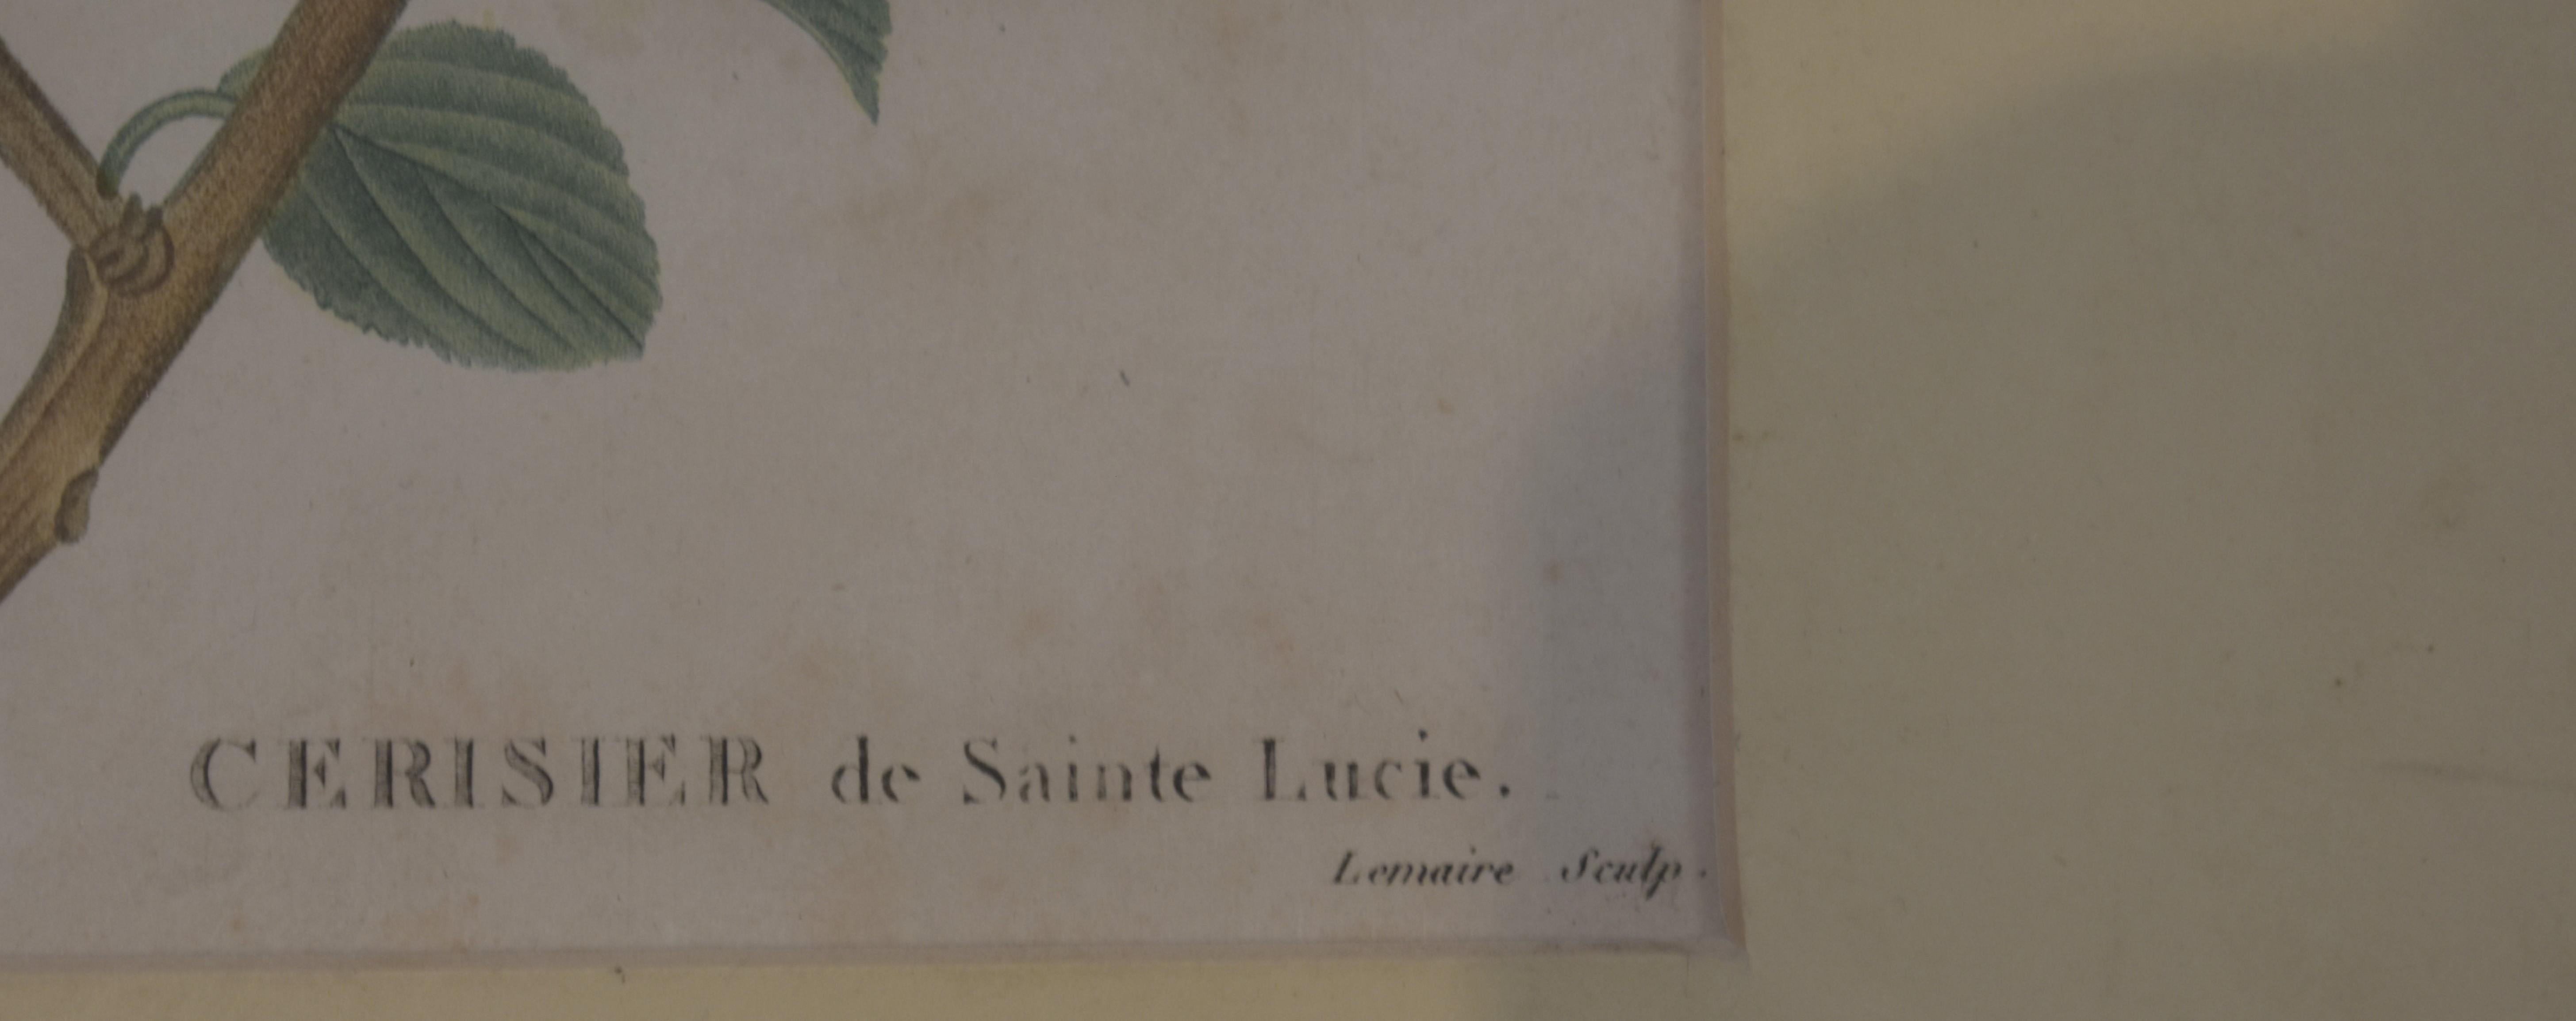 Botanicaler Druck von Redoute, 18. Jahrhundert (Alte Meister), Print, von Pierre Joseph Redoute